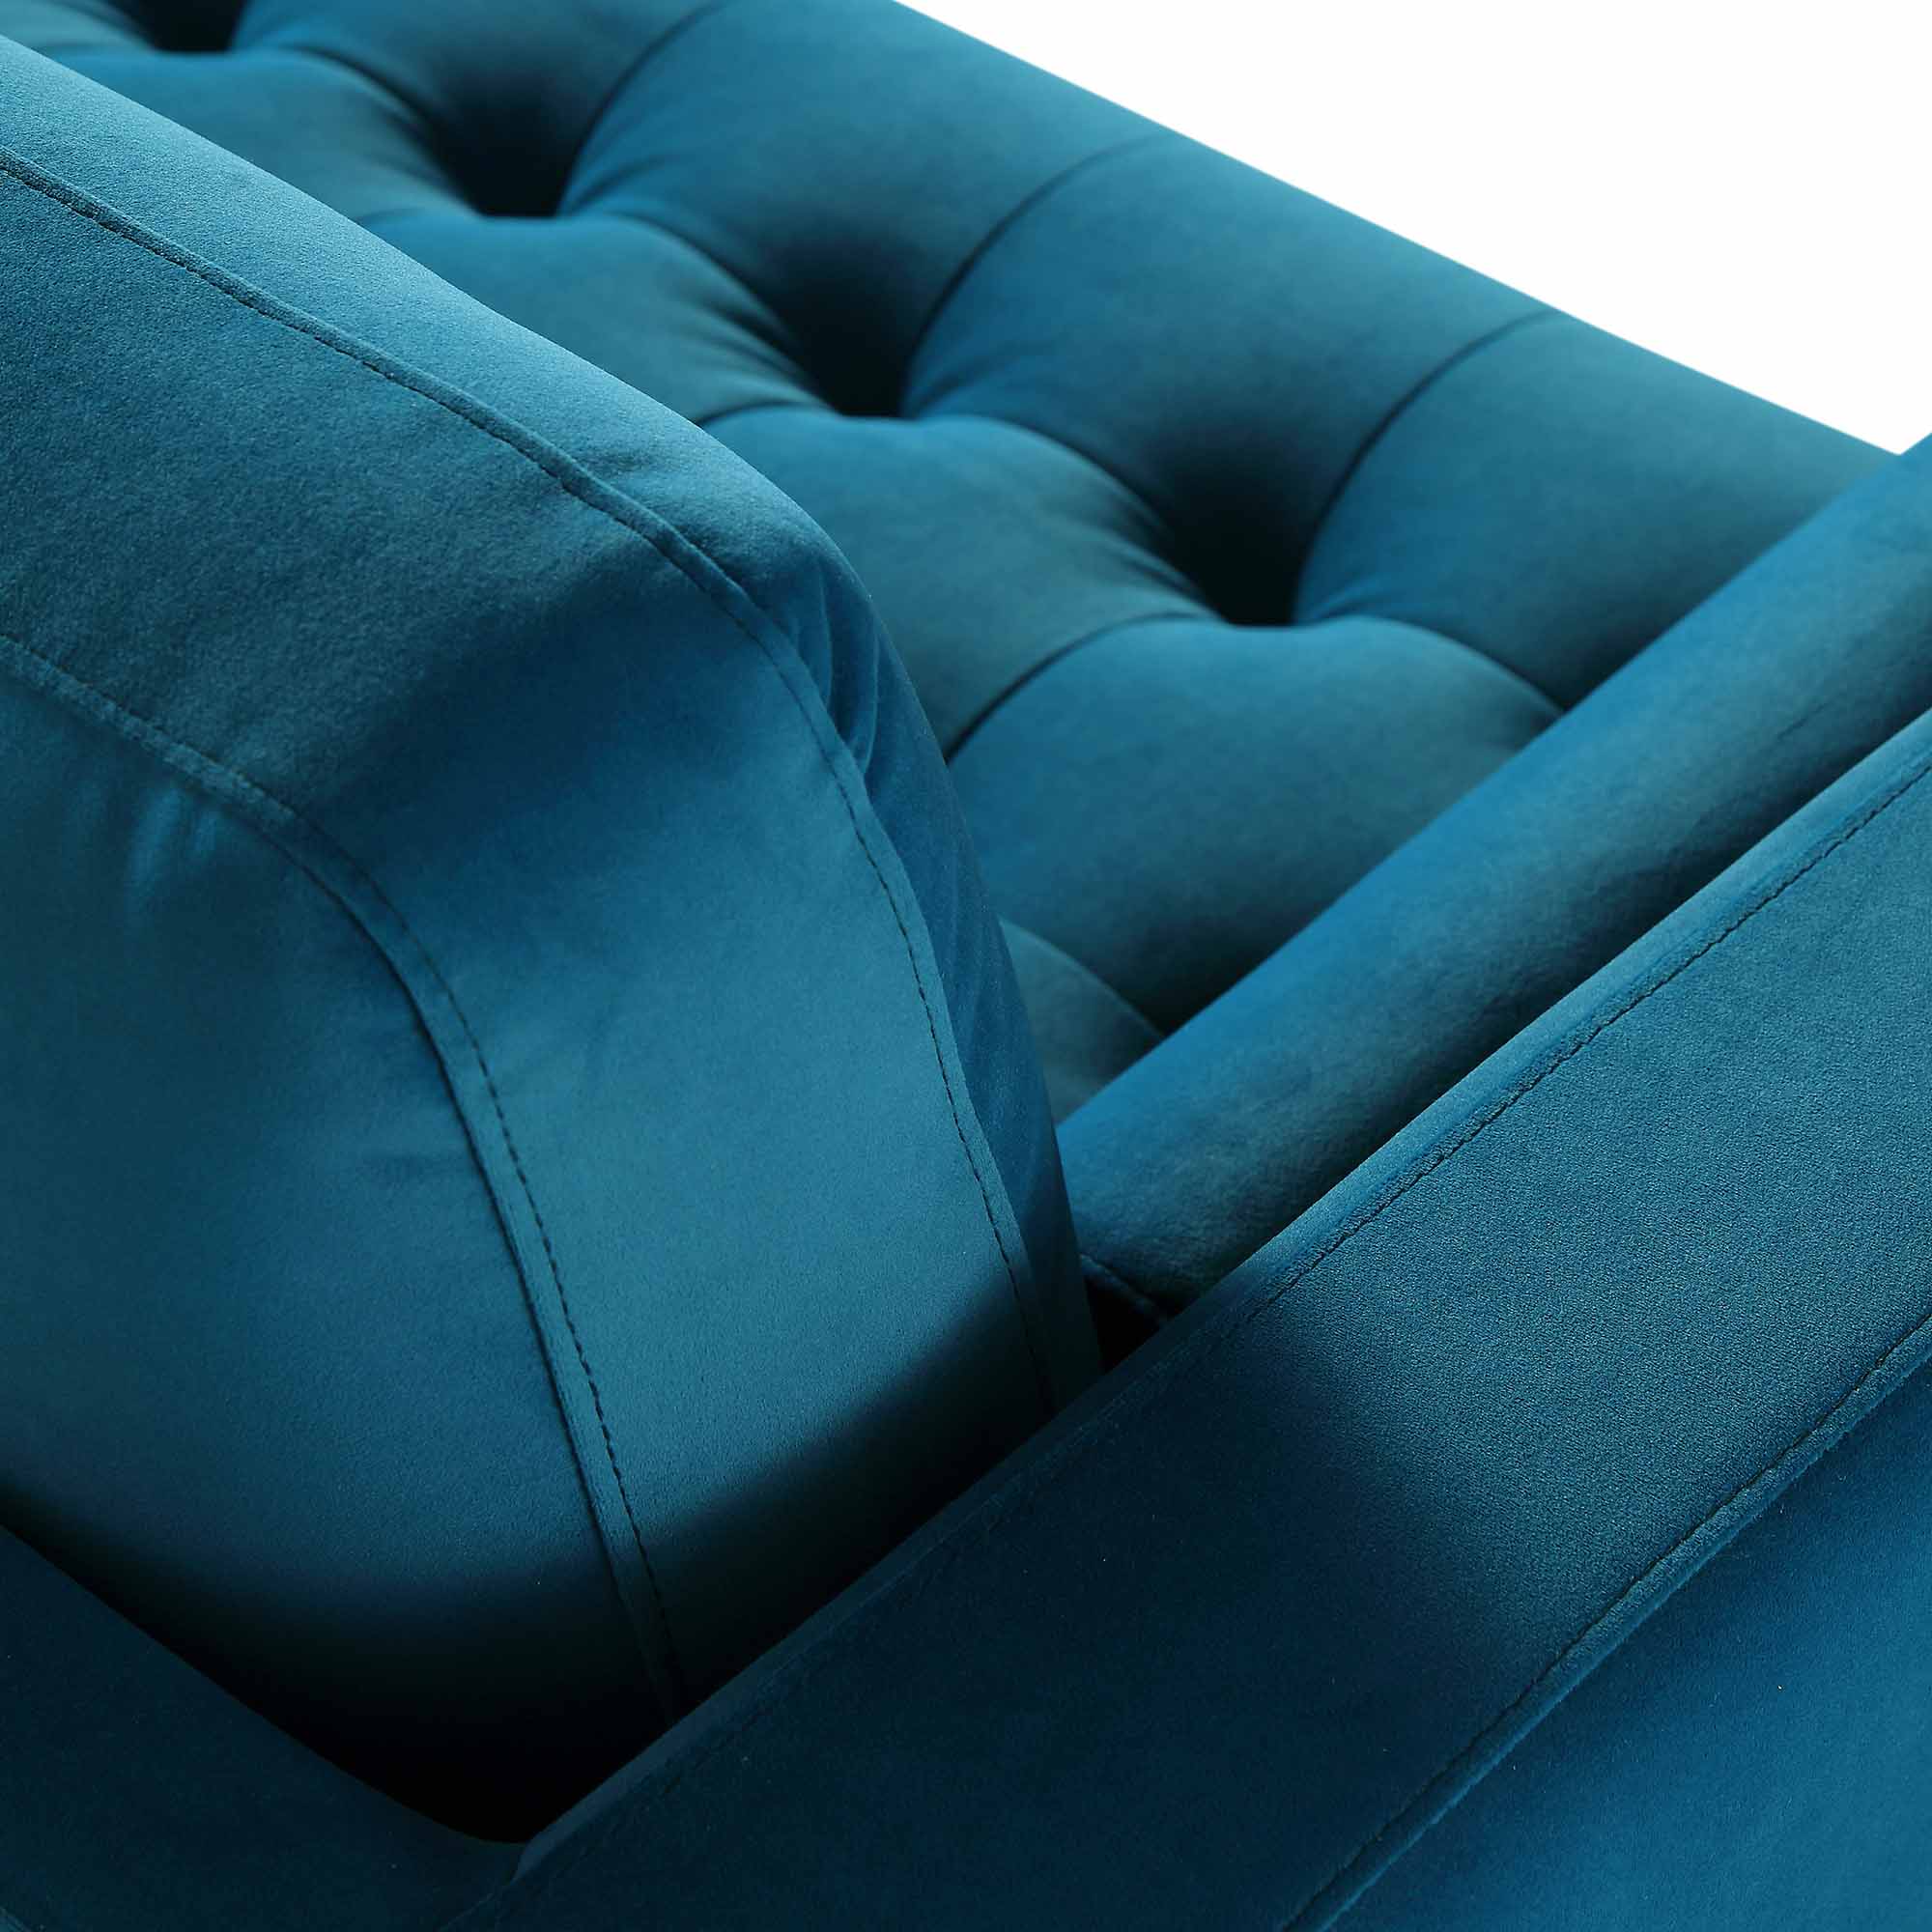 Henrietta Large 3-Seater Sofa, Teal Velvet